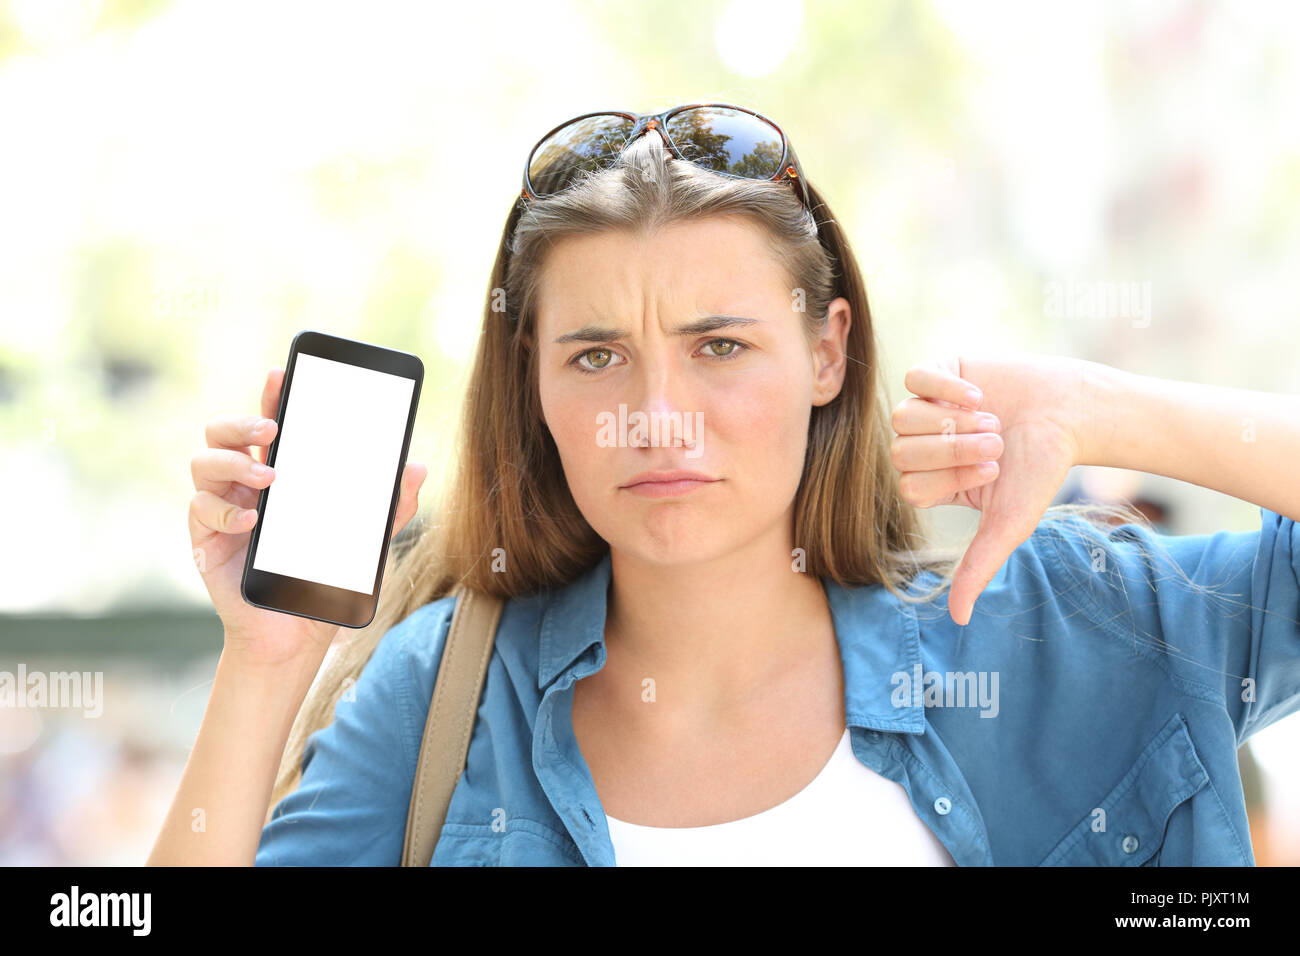 Vorderansicht Porträt eines zornigen Mädchen zeigt leeren Bildschirm "Telefon" mit dem Daumen nach unten auf der Straße Stockfoto